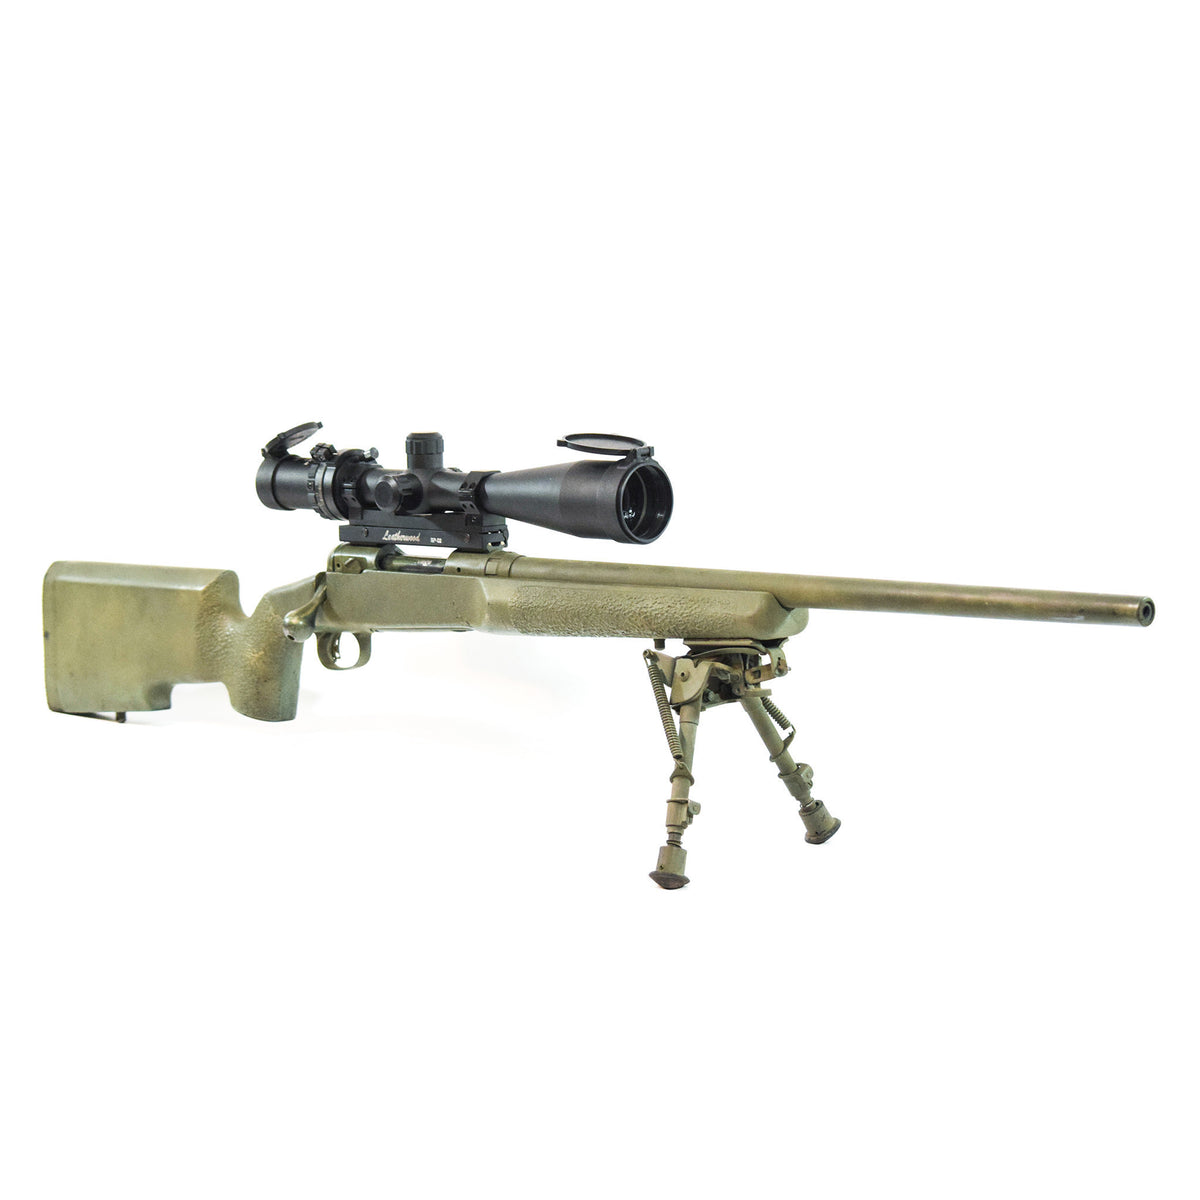 ART M1200 mounted on Remington 700